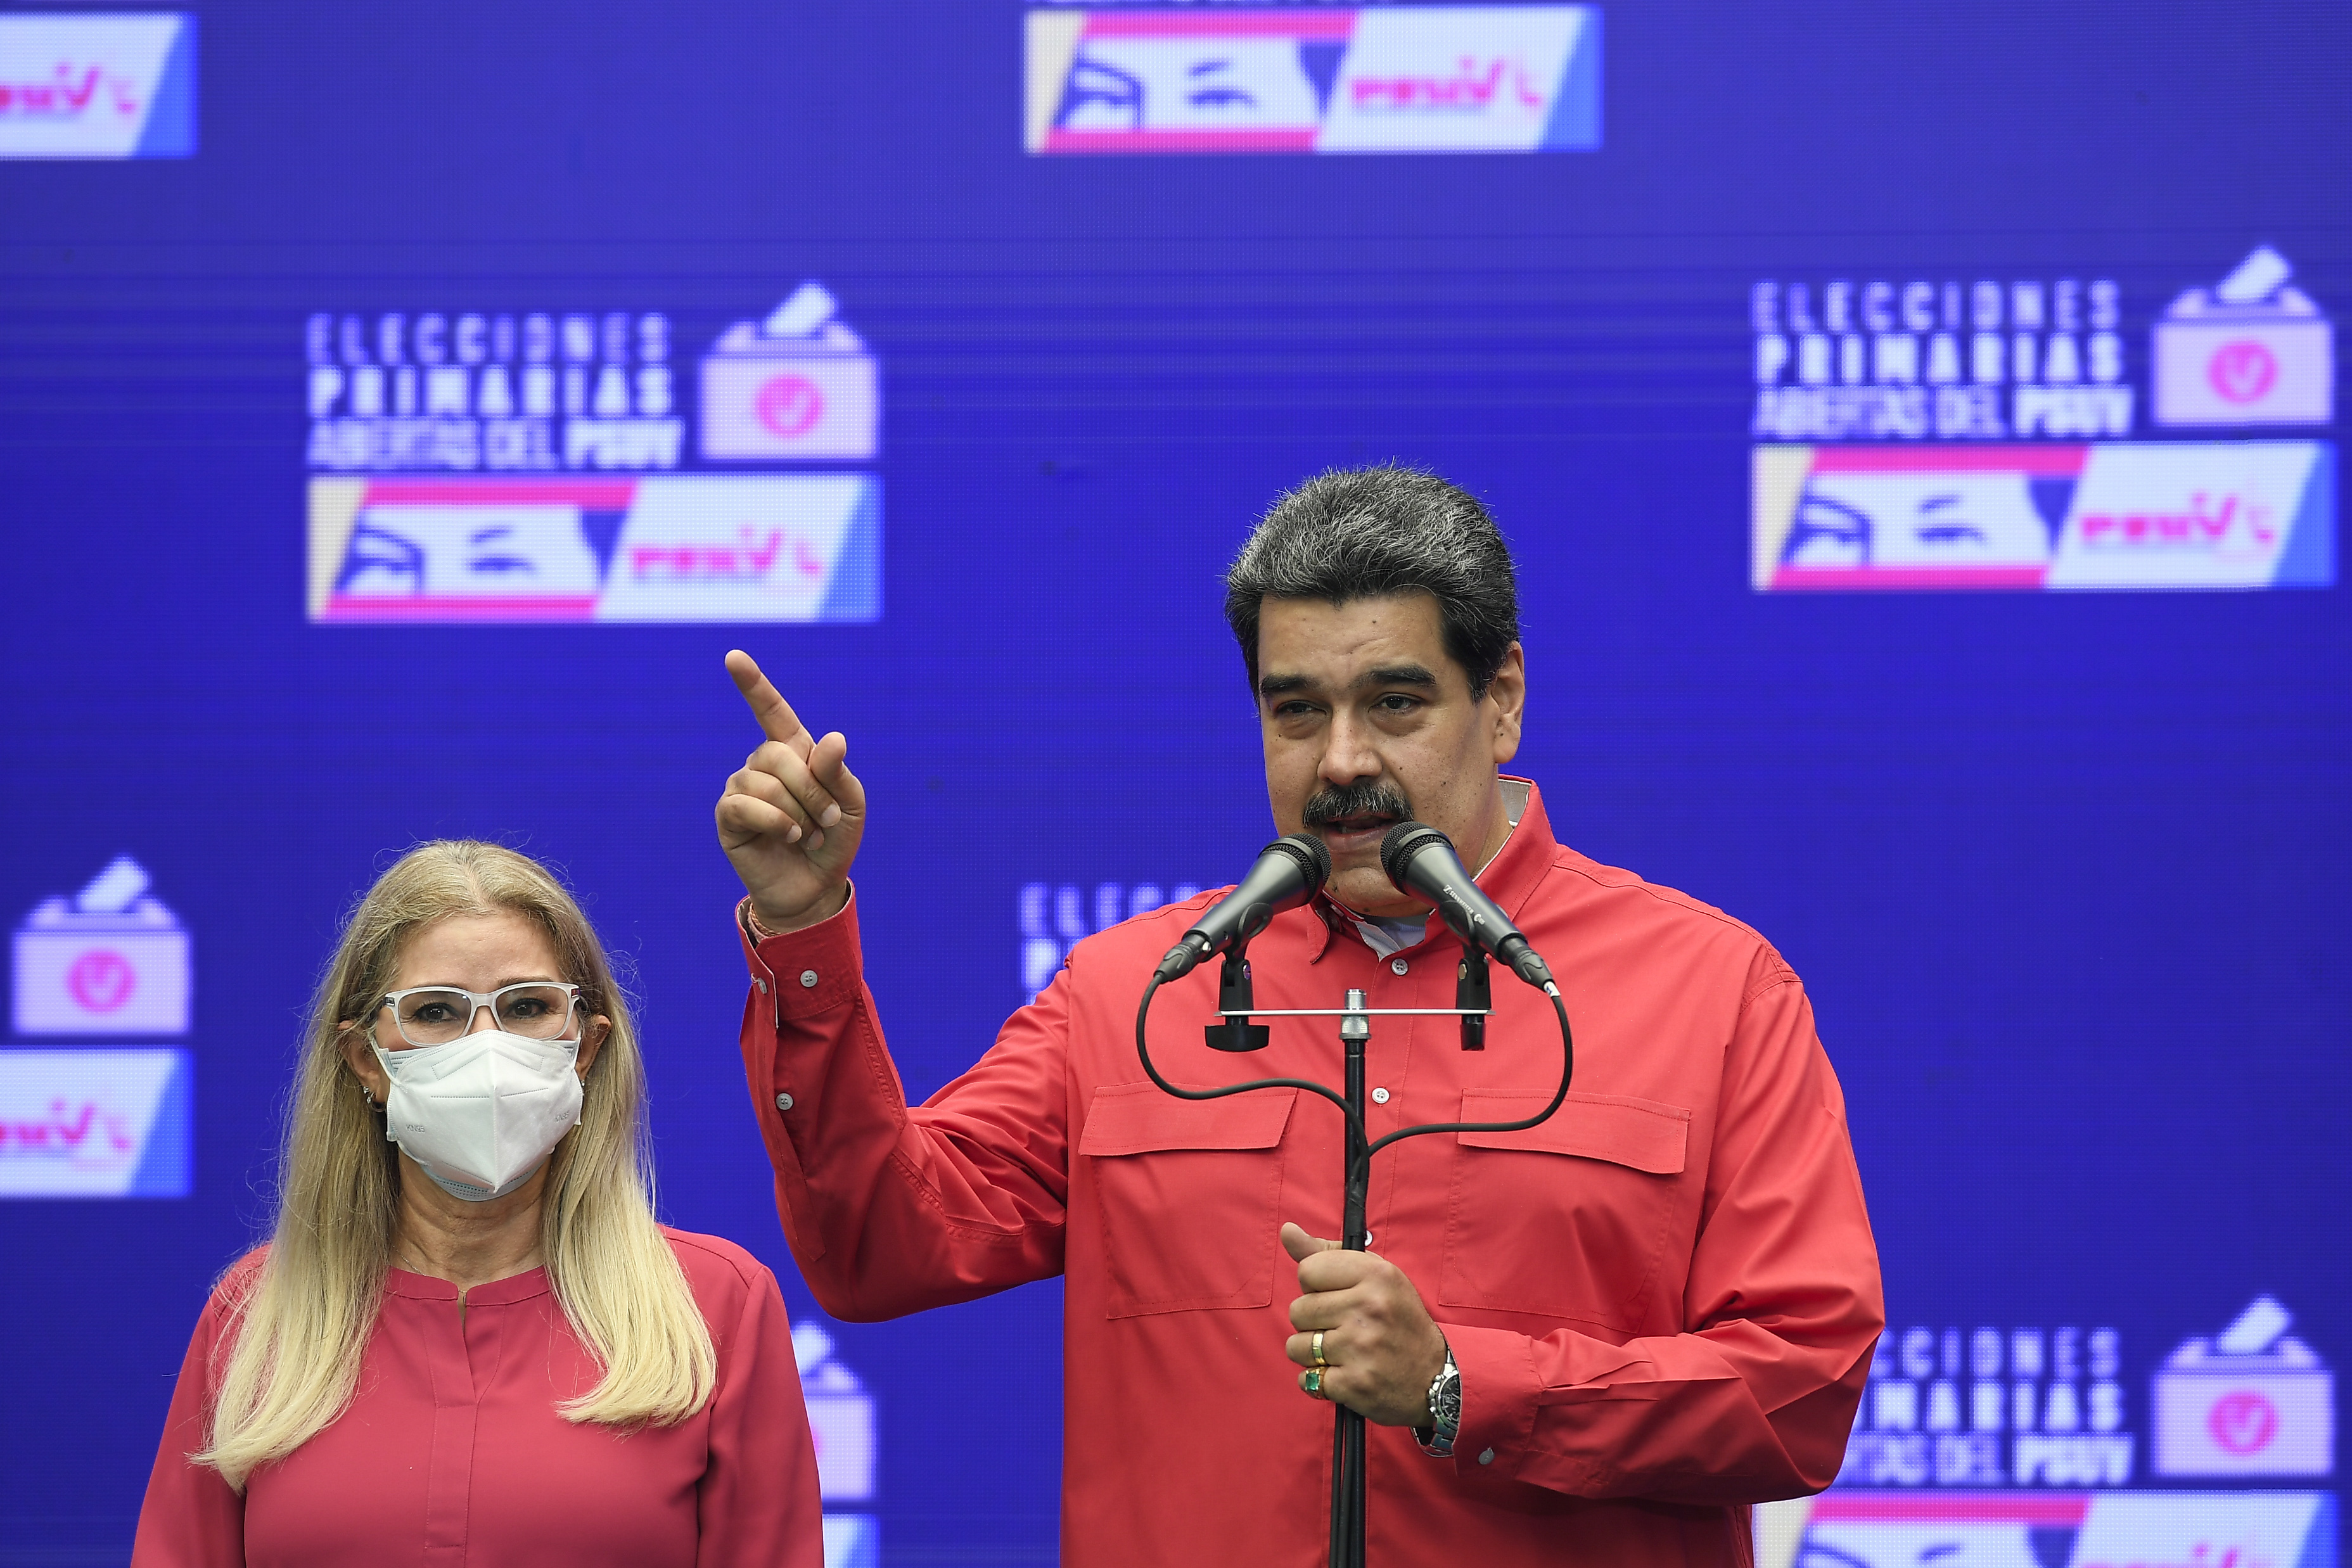 Norge og Mexico skal prøve å sikre fred i Venezuela